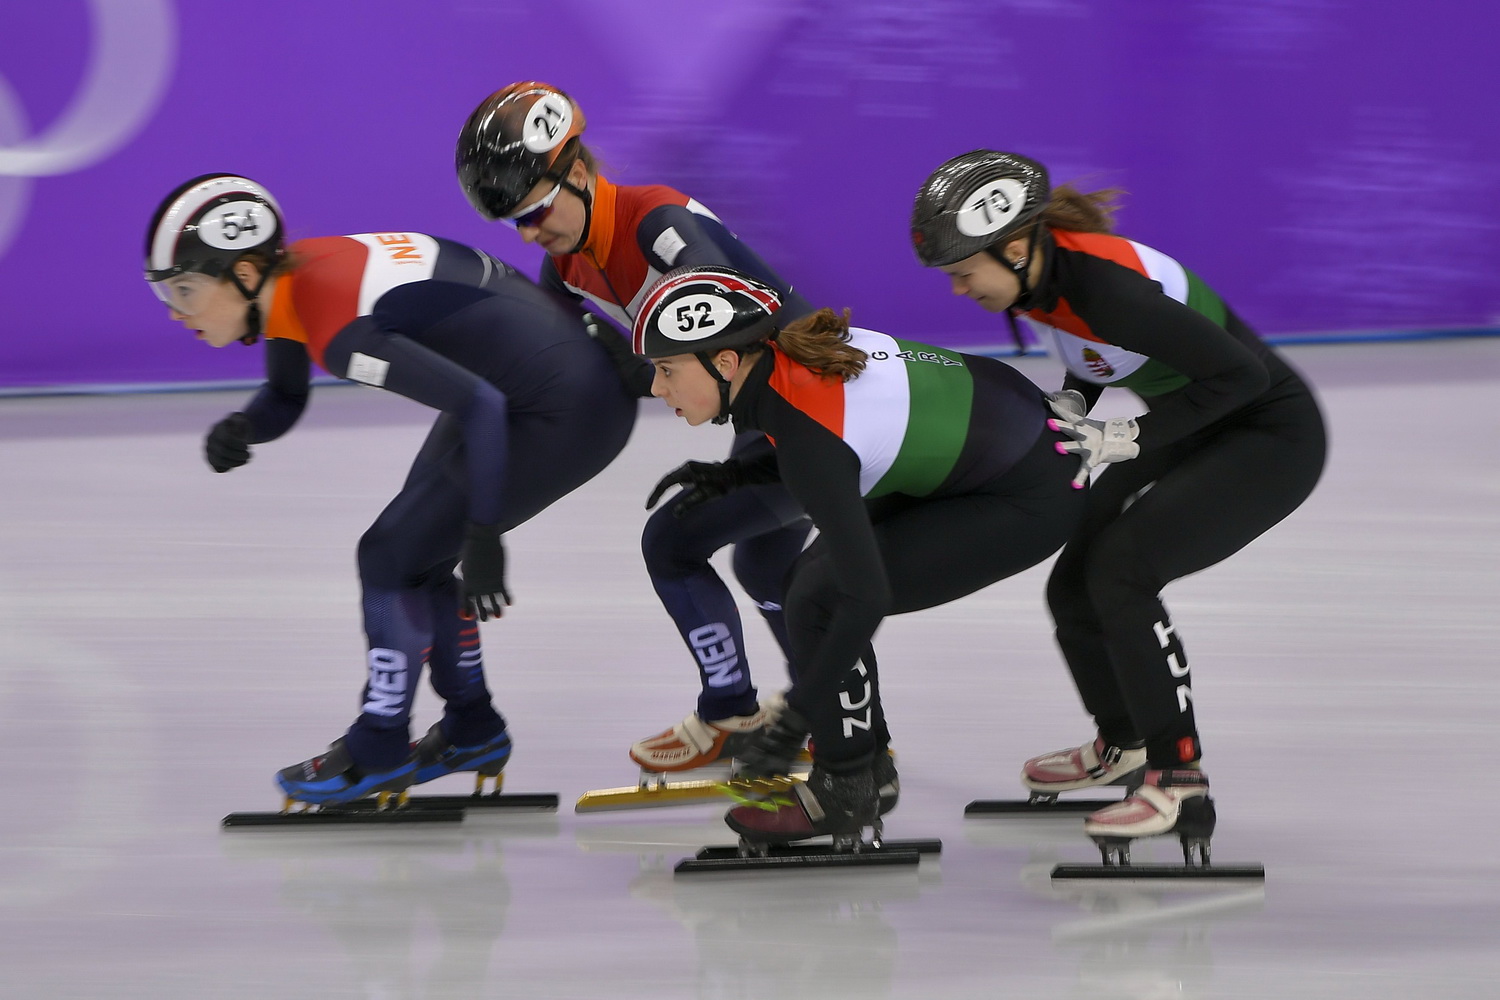 Kónya Zsófia (j2) és Bácskai Sára Luca (j), előttük a holland csapat tagjai a rövidpályás gyorskorcsolyaverseny női 3000 méteres váltó táv B döntőjében a phjongcshangi téli olimpián. MTI Fotó: Czeglédi Zsolt